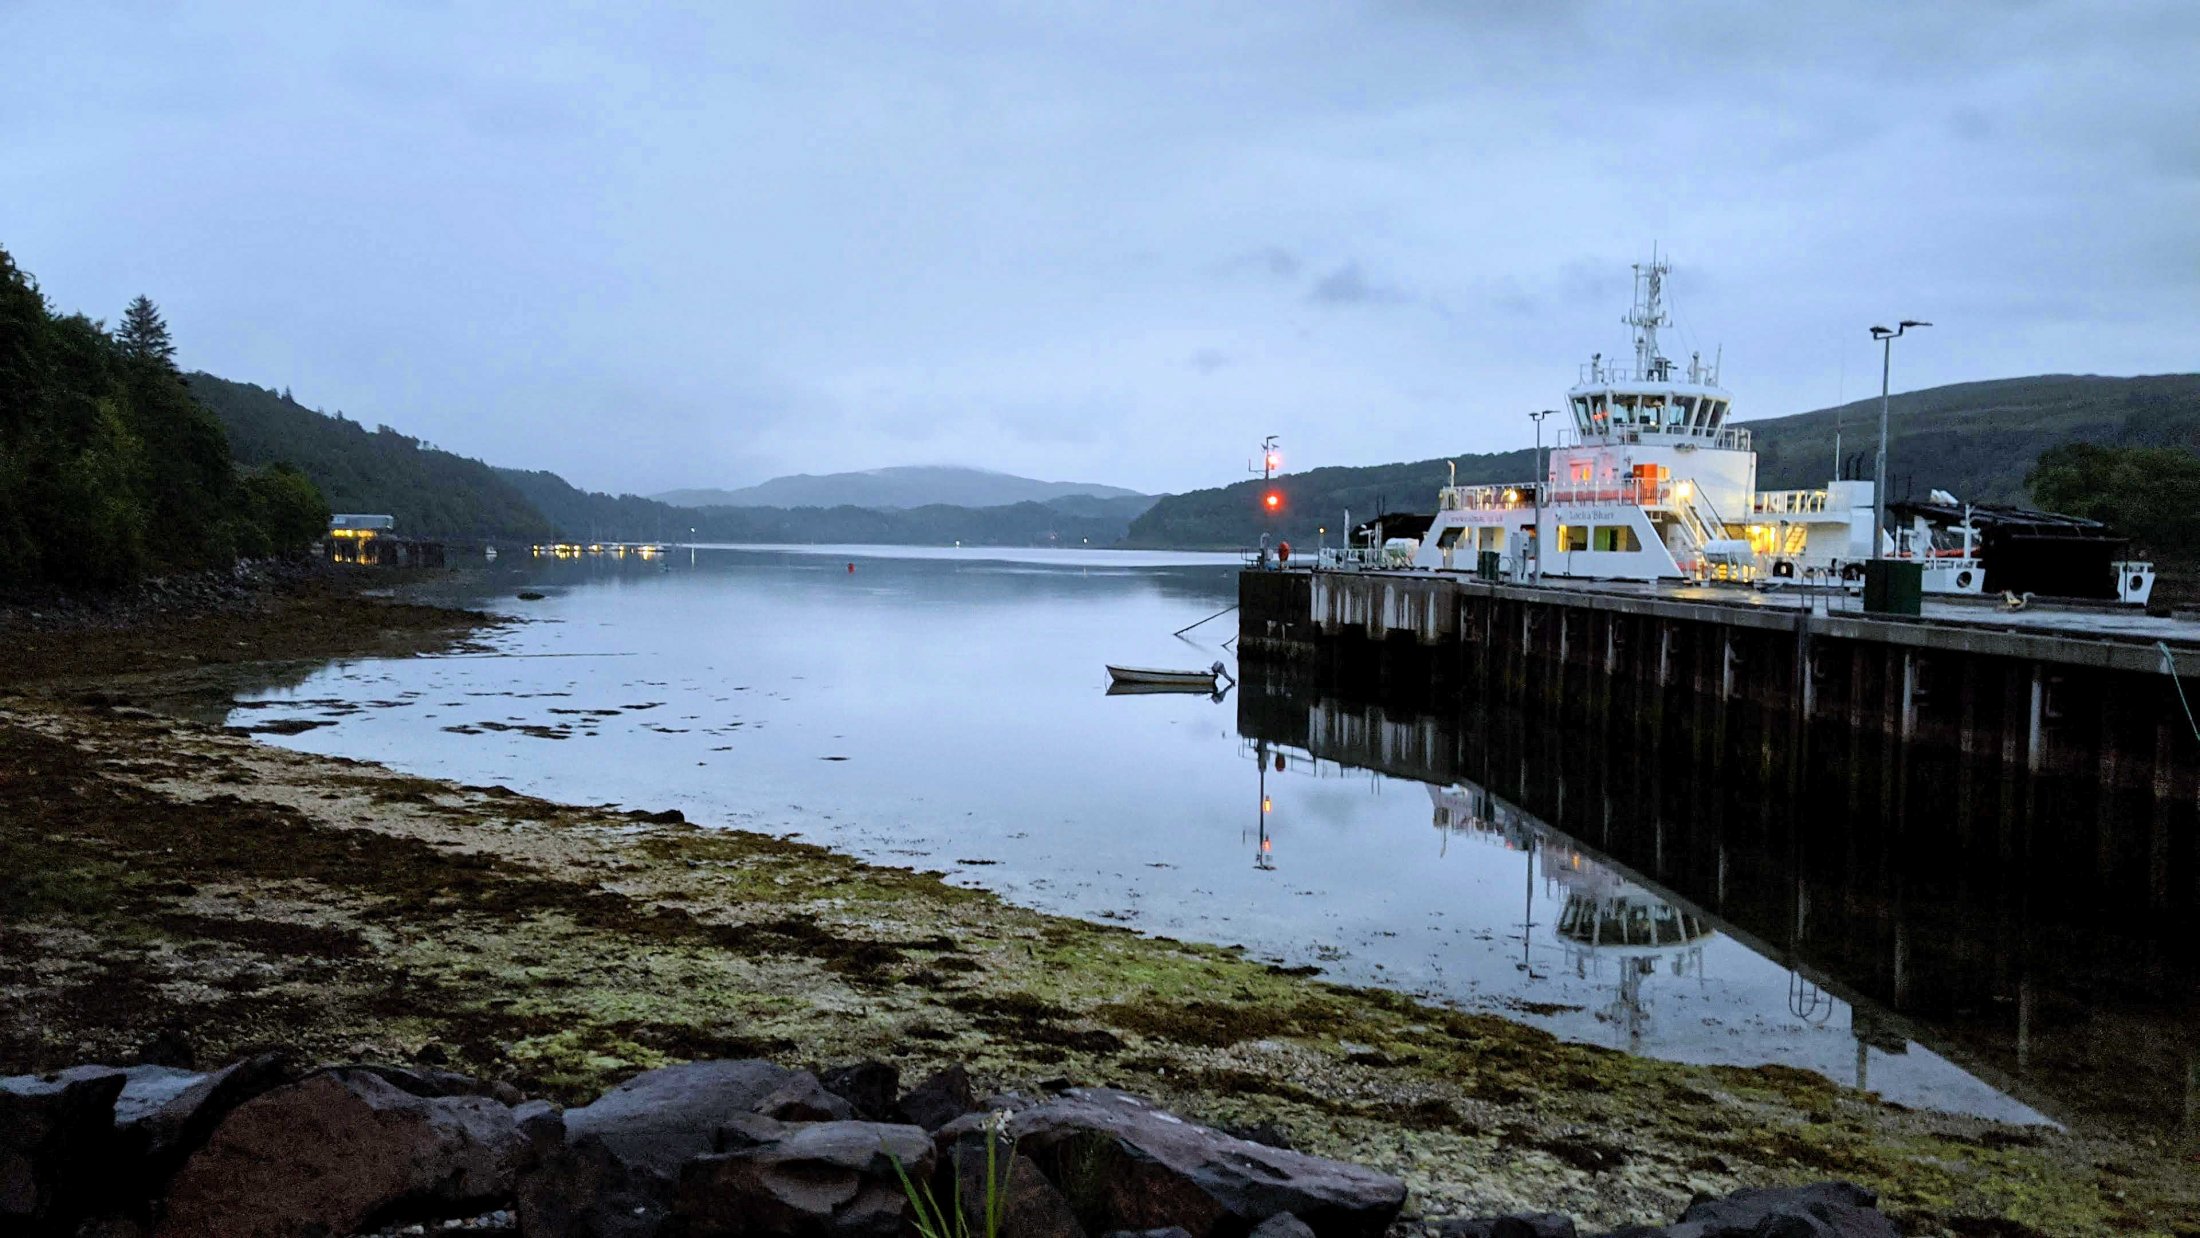 Lochaline Ferry Terminal